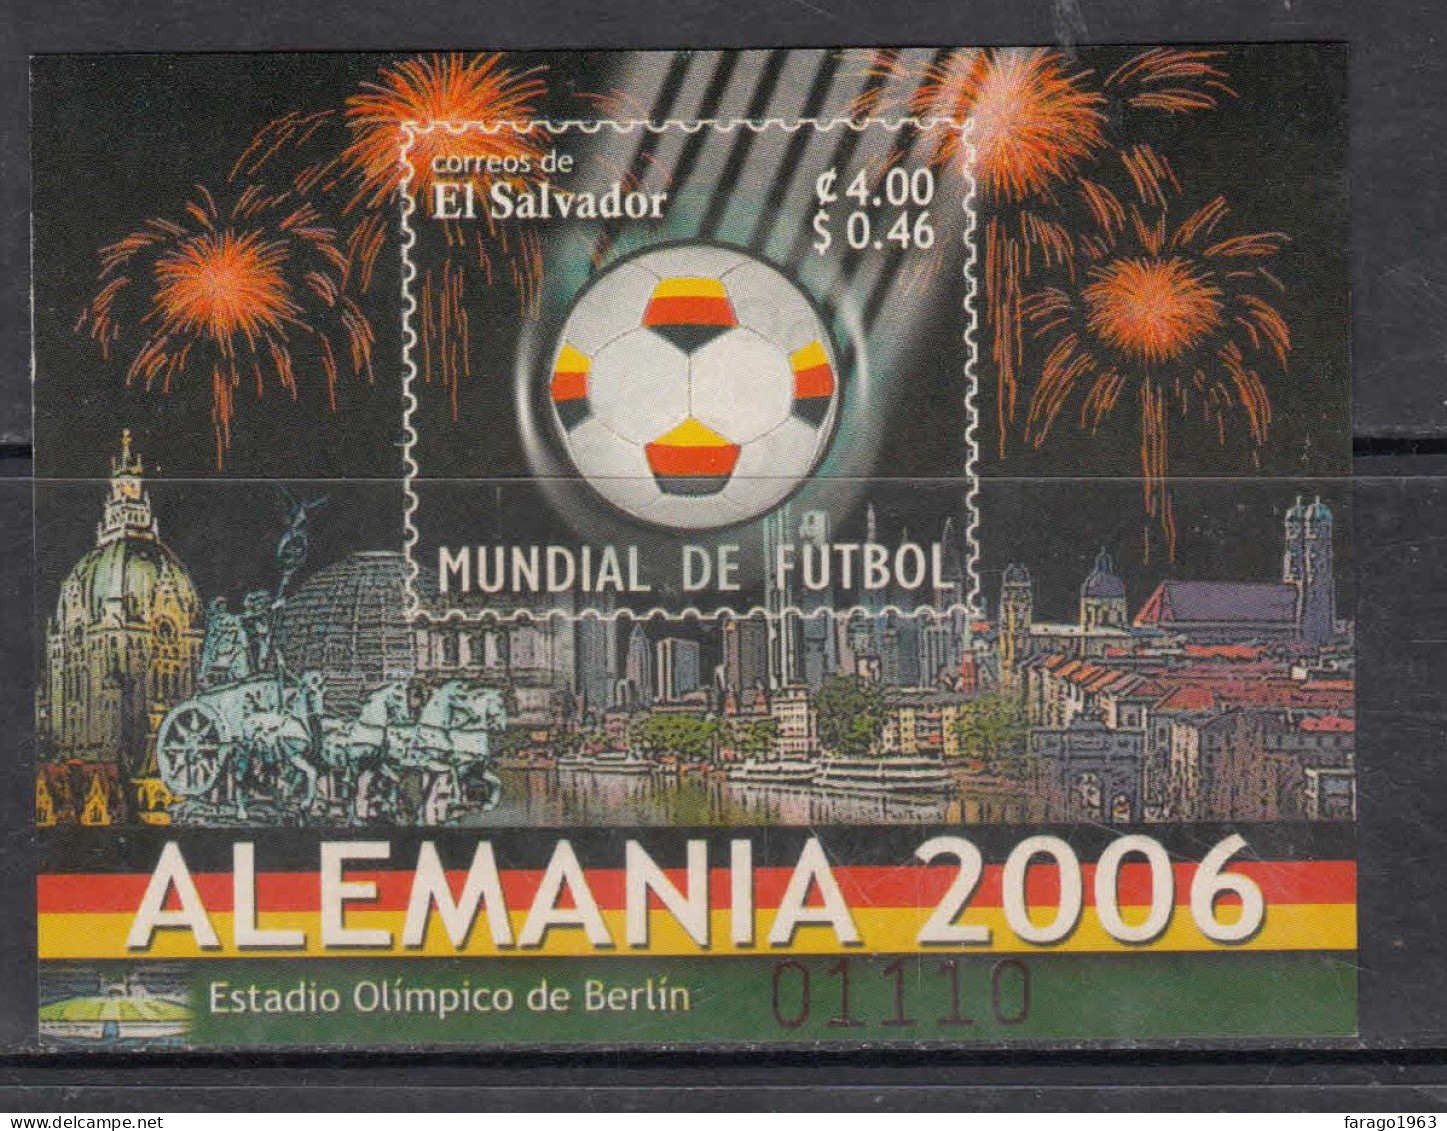 2006 El Salvador World Cup Football Germany Souvenir Sheet MNH - El Salvador